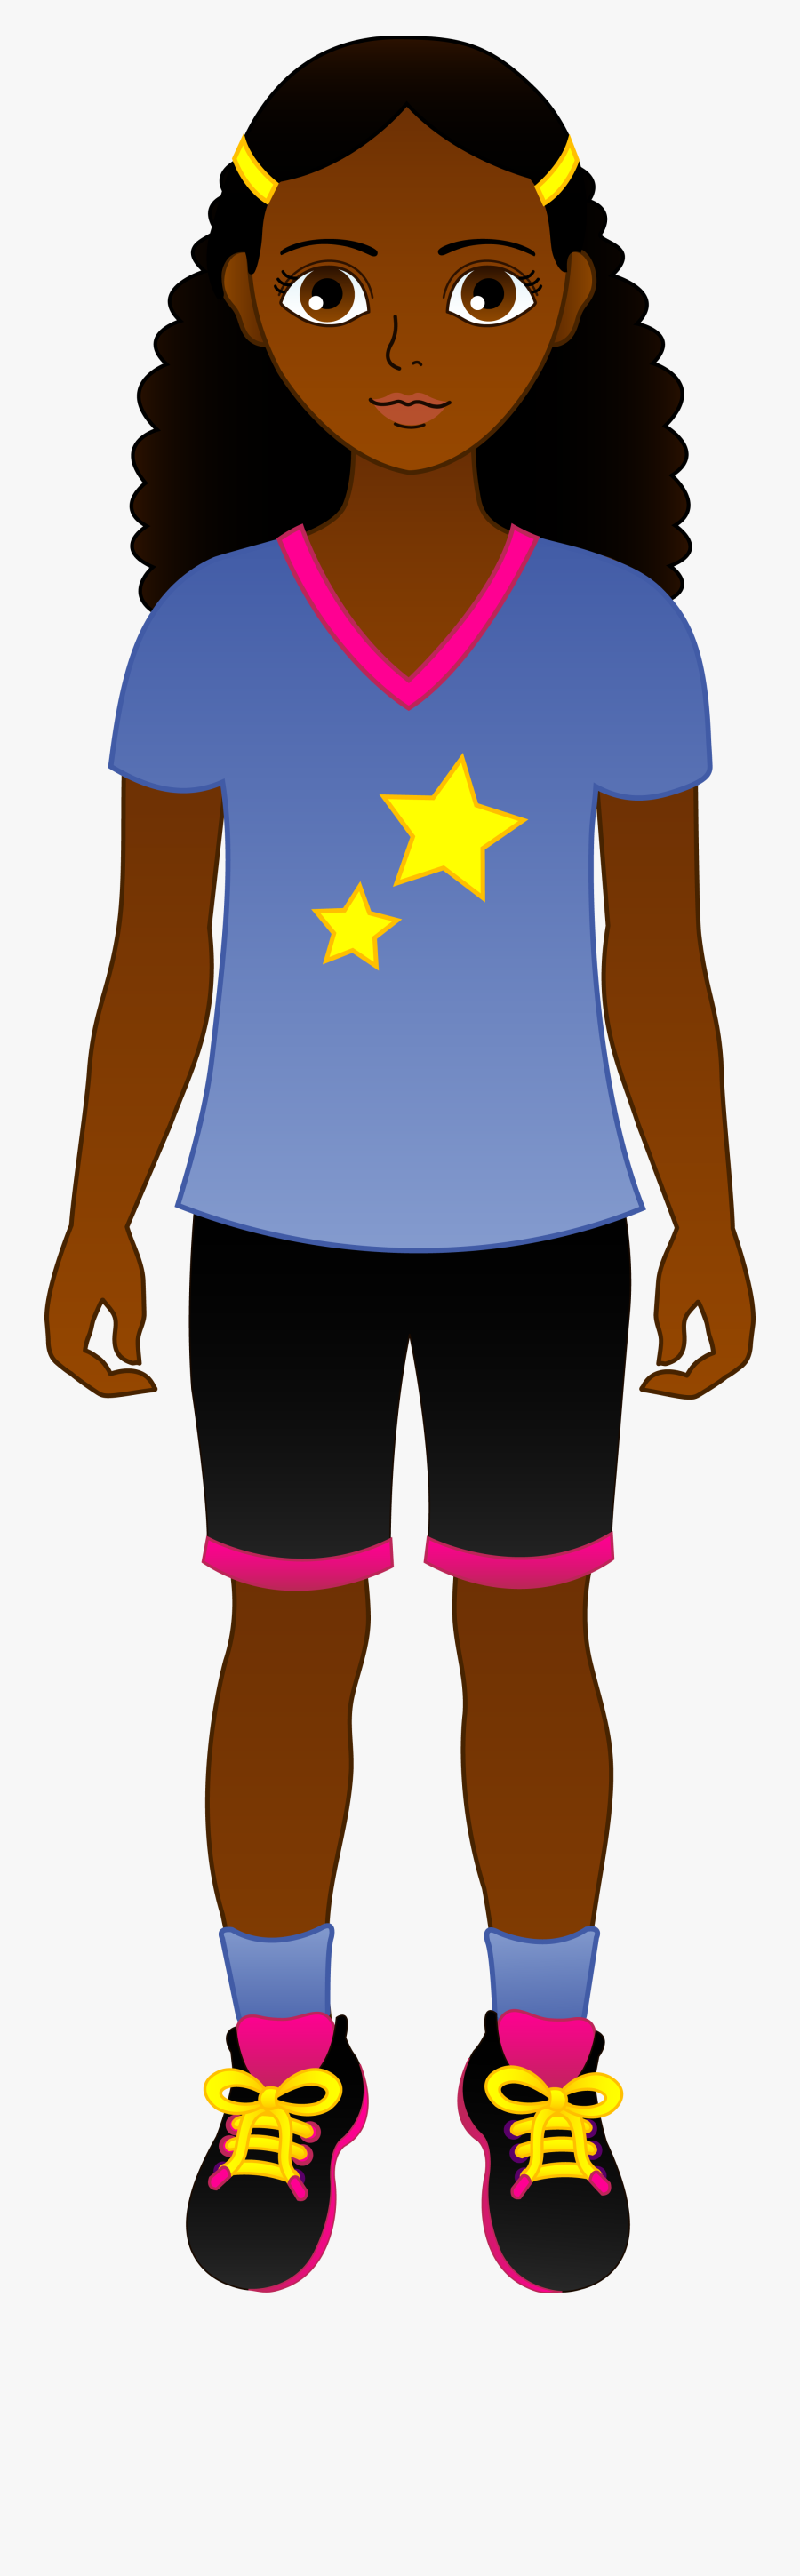 Clip Art Little Cartoon Character Steph - Little Cartoon Black Girls, Transparent Clipart